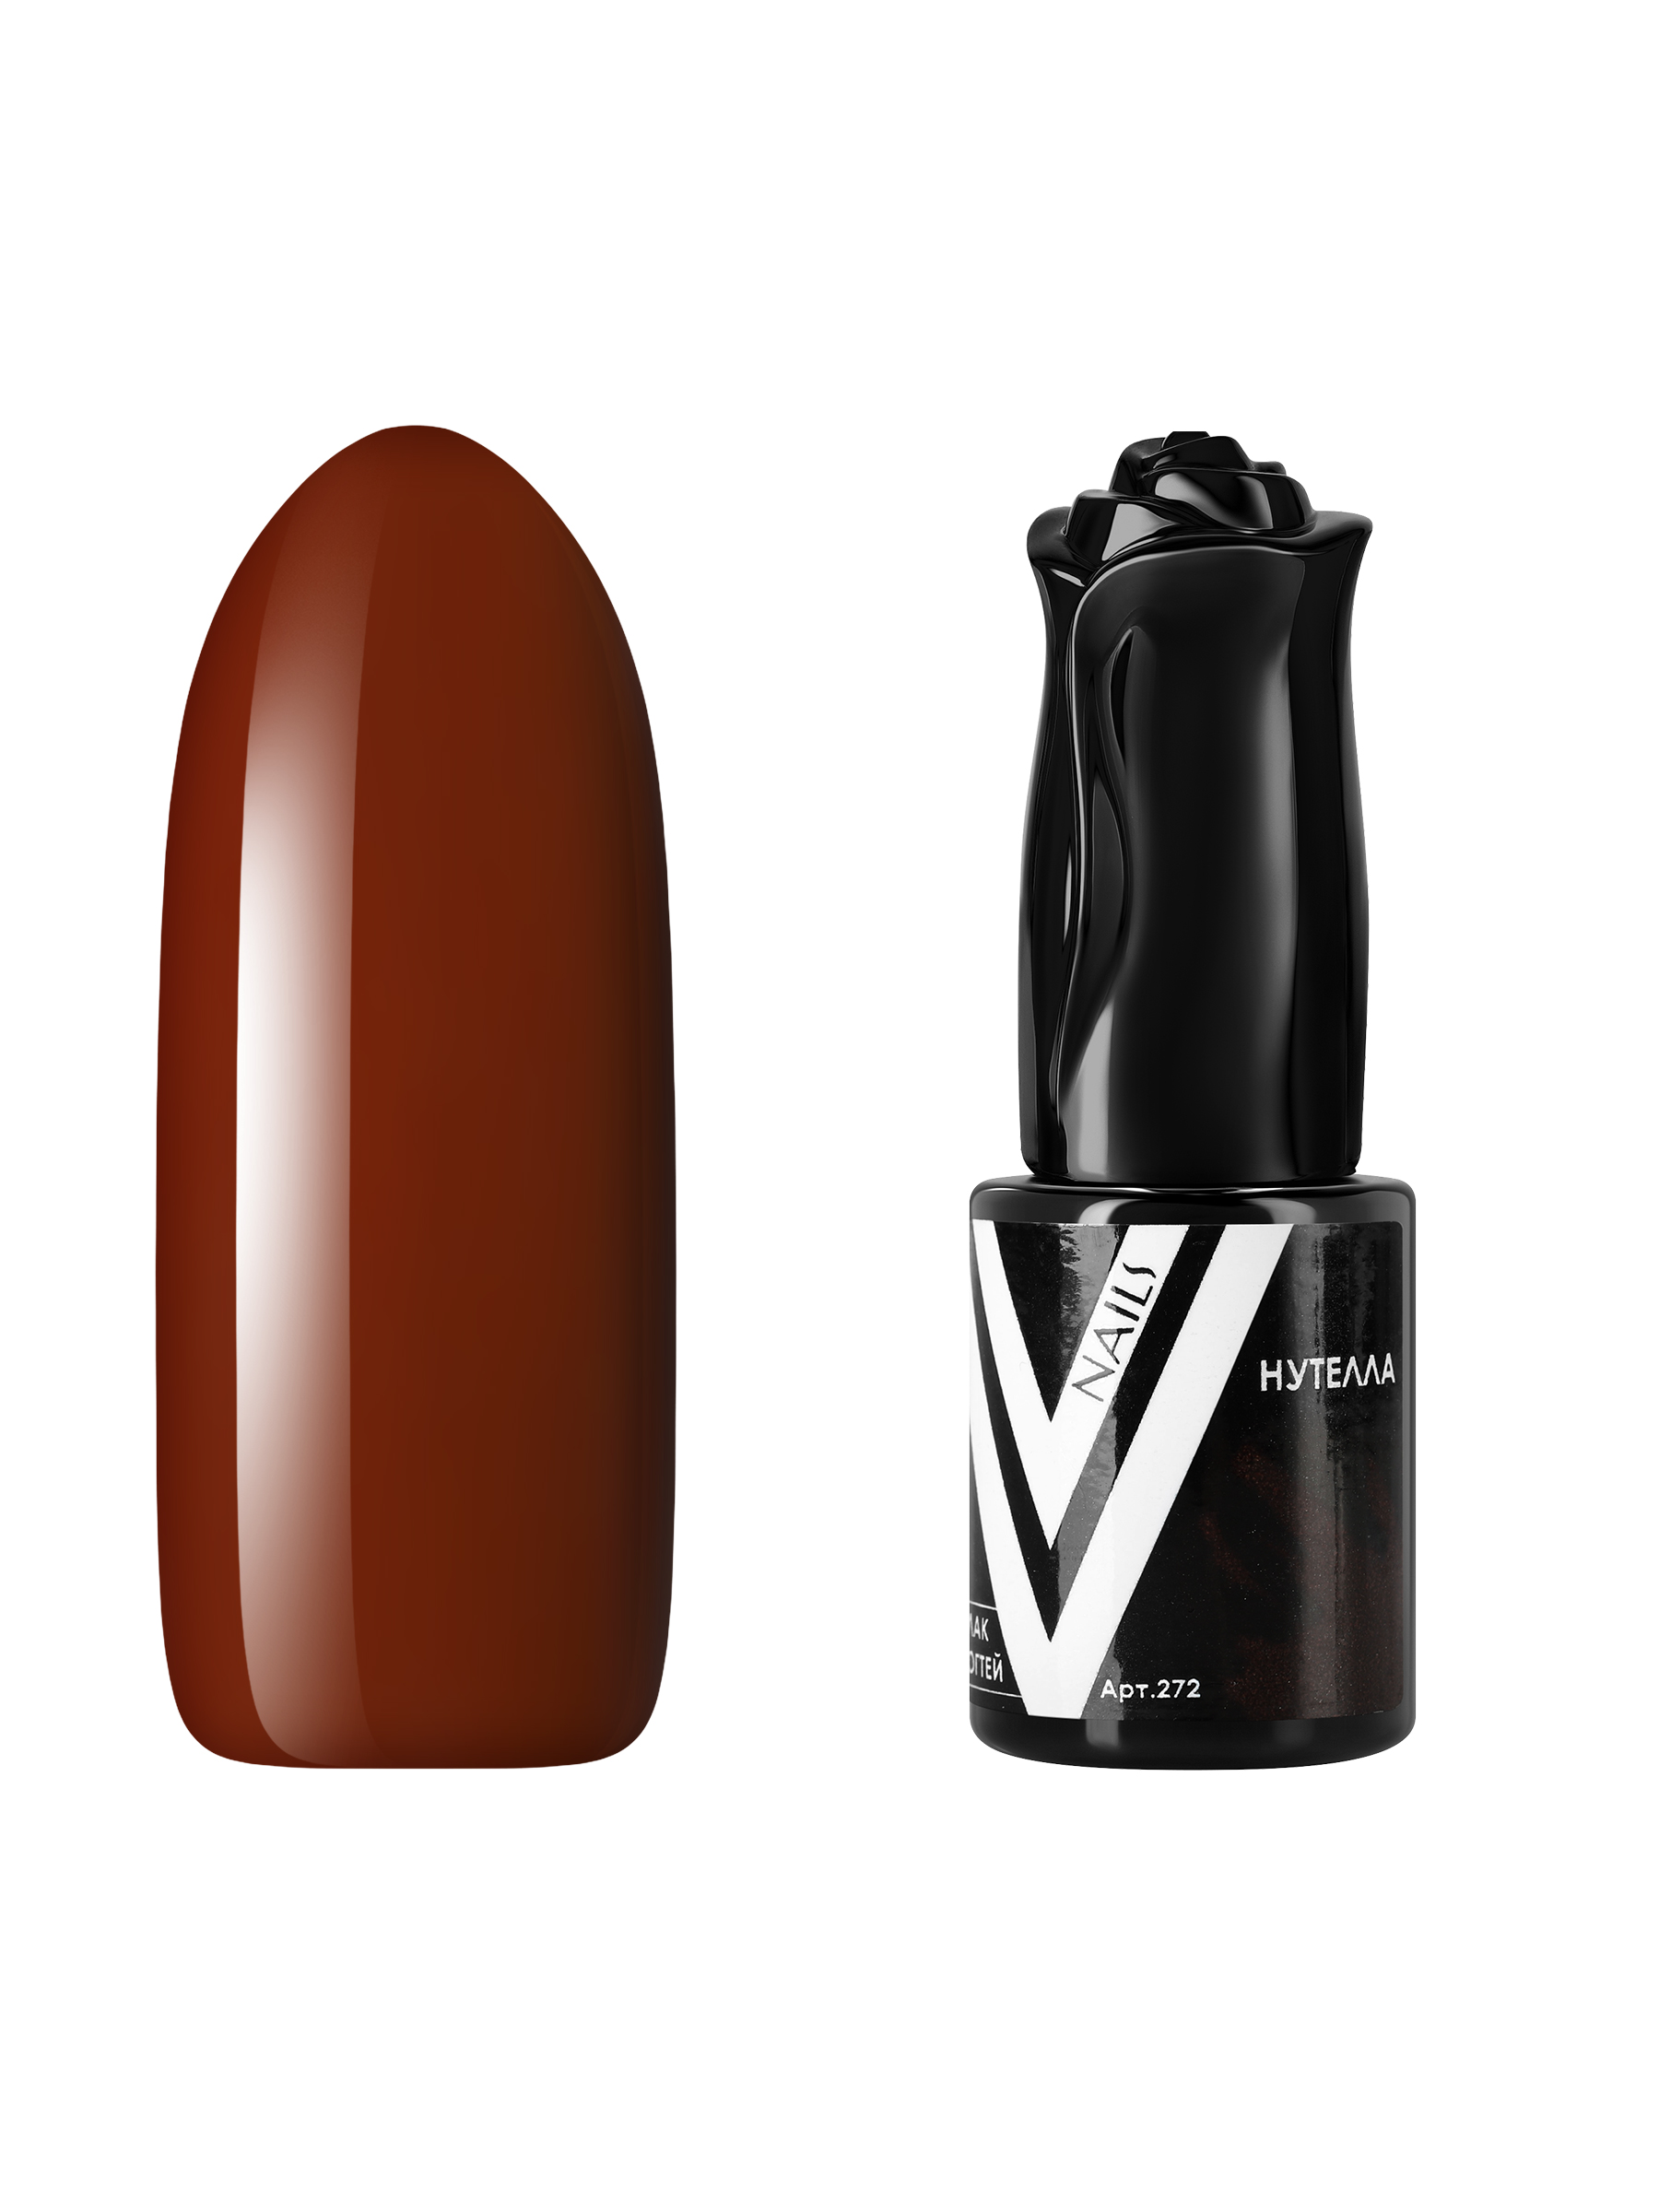 Гель-лак для ногтей Vogue Nails плотный самовыравнивающийся, коричневый, 10 мл дегидратирующий тоник для рук vogue nails очищающий антибактериальный для маникюра 100 мл